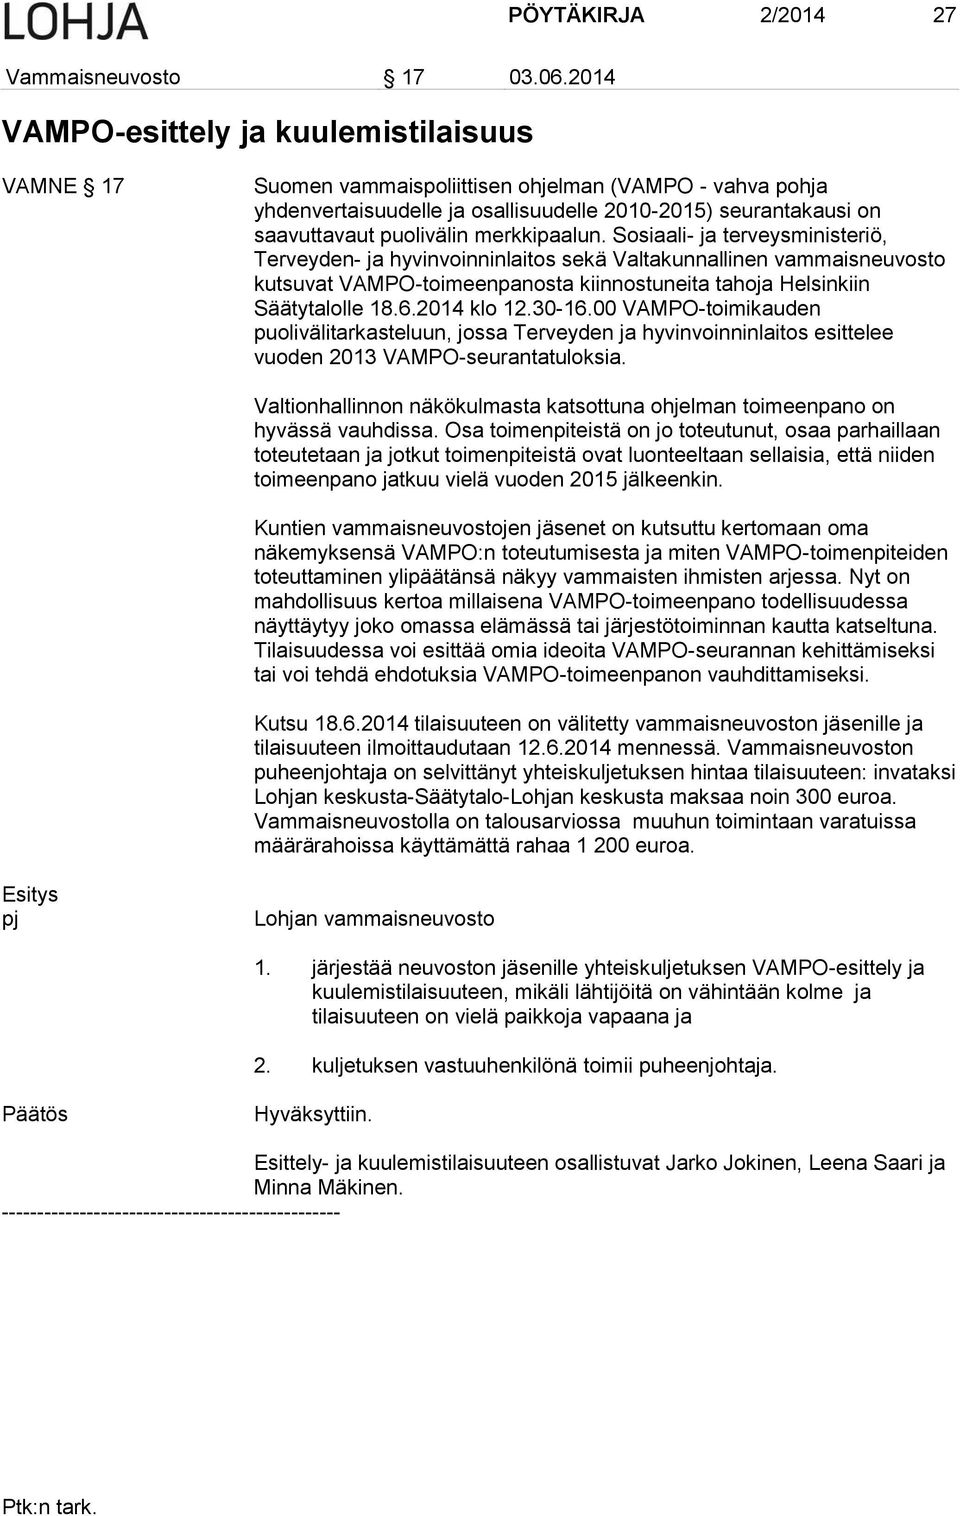 merkkipaalun. Sosiaali- ja terveysministeriö, Terveyden- ja hyvinvoinninlaitos sekä Valtakunnallinen vammaisneuvosto kutsuvat VAMPO-toimeenpanosta kiinnostuneita tahoja Helsinkiin Säätytalolle 18.6.